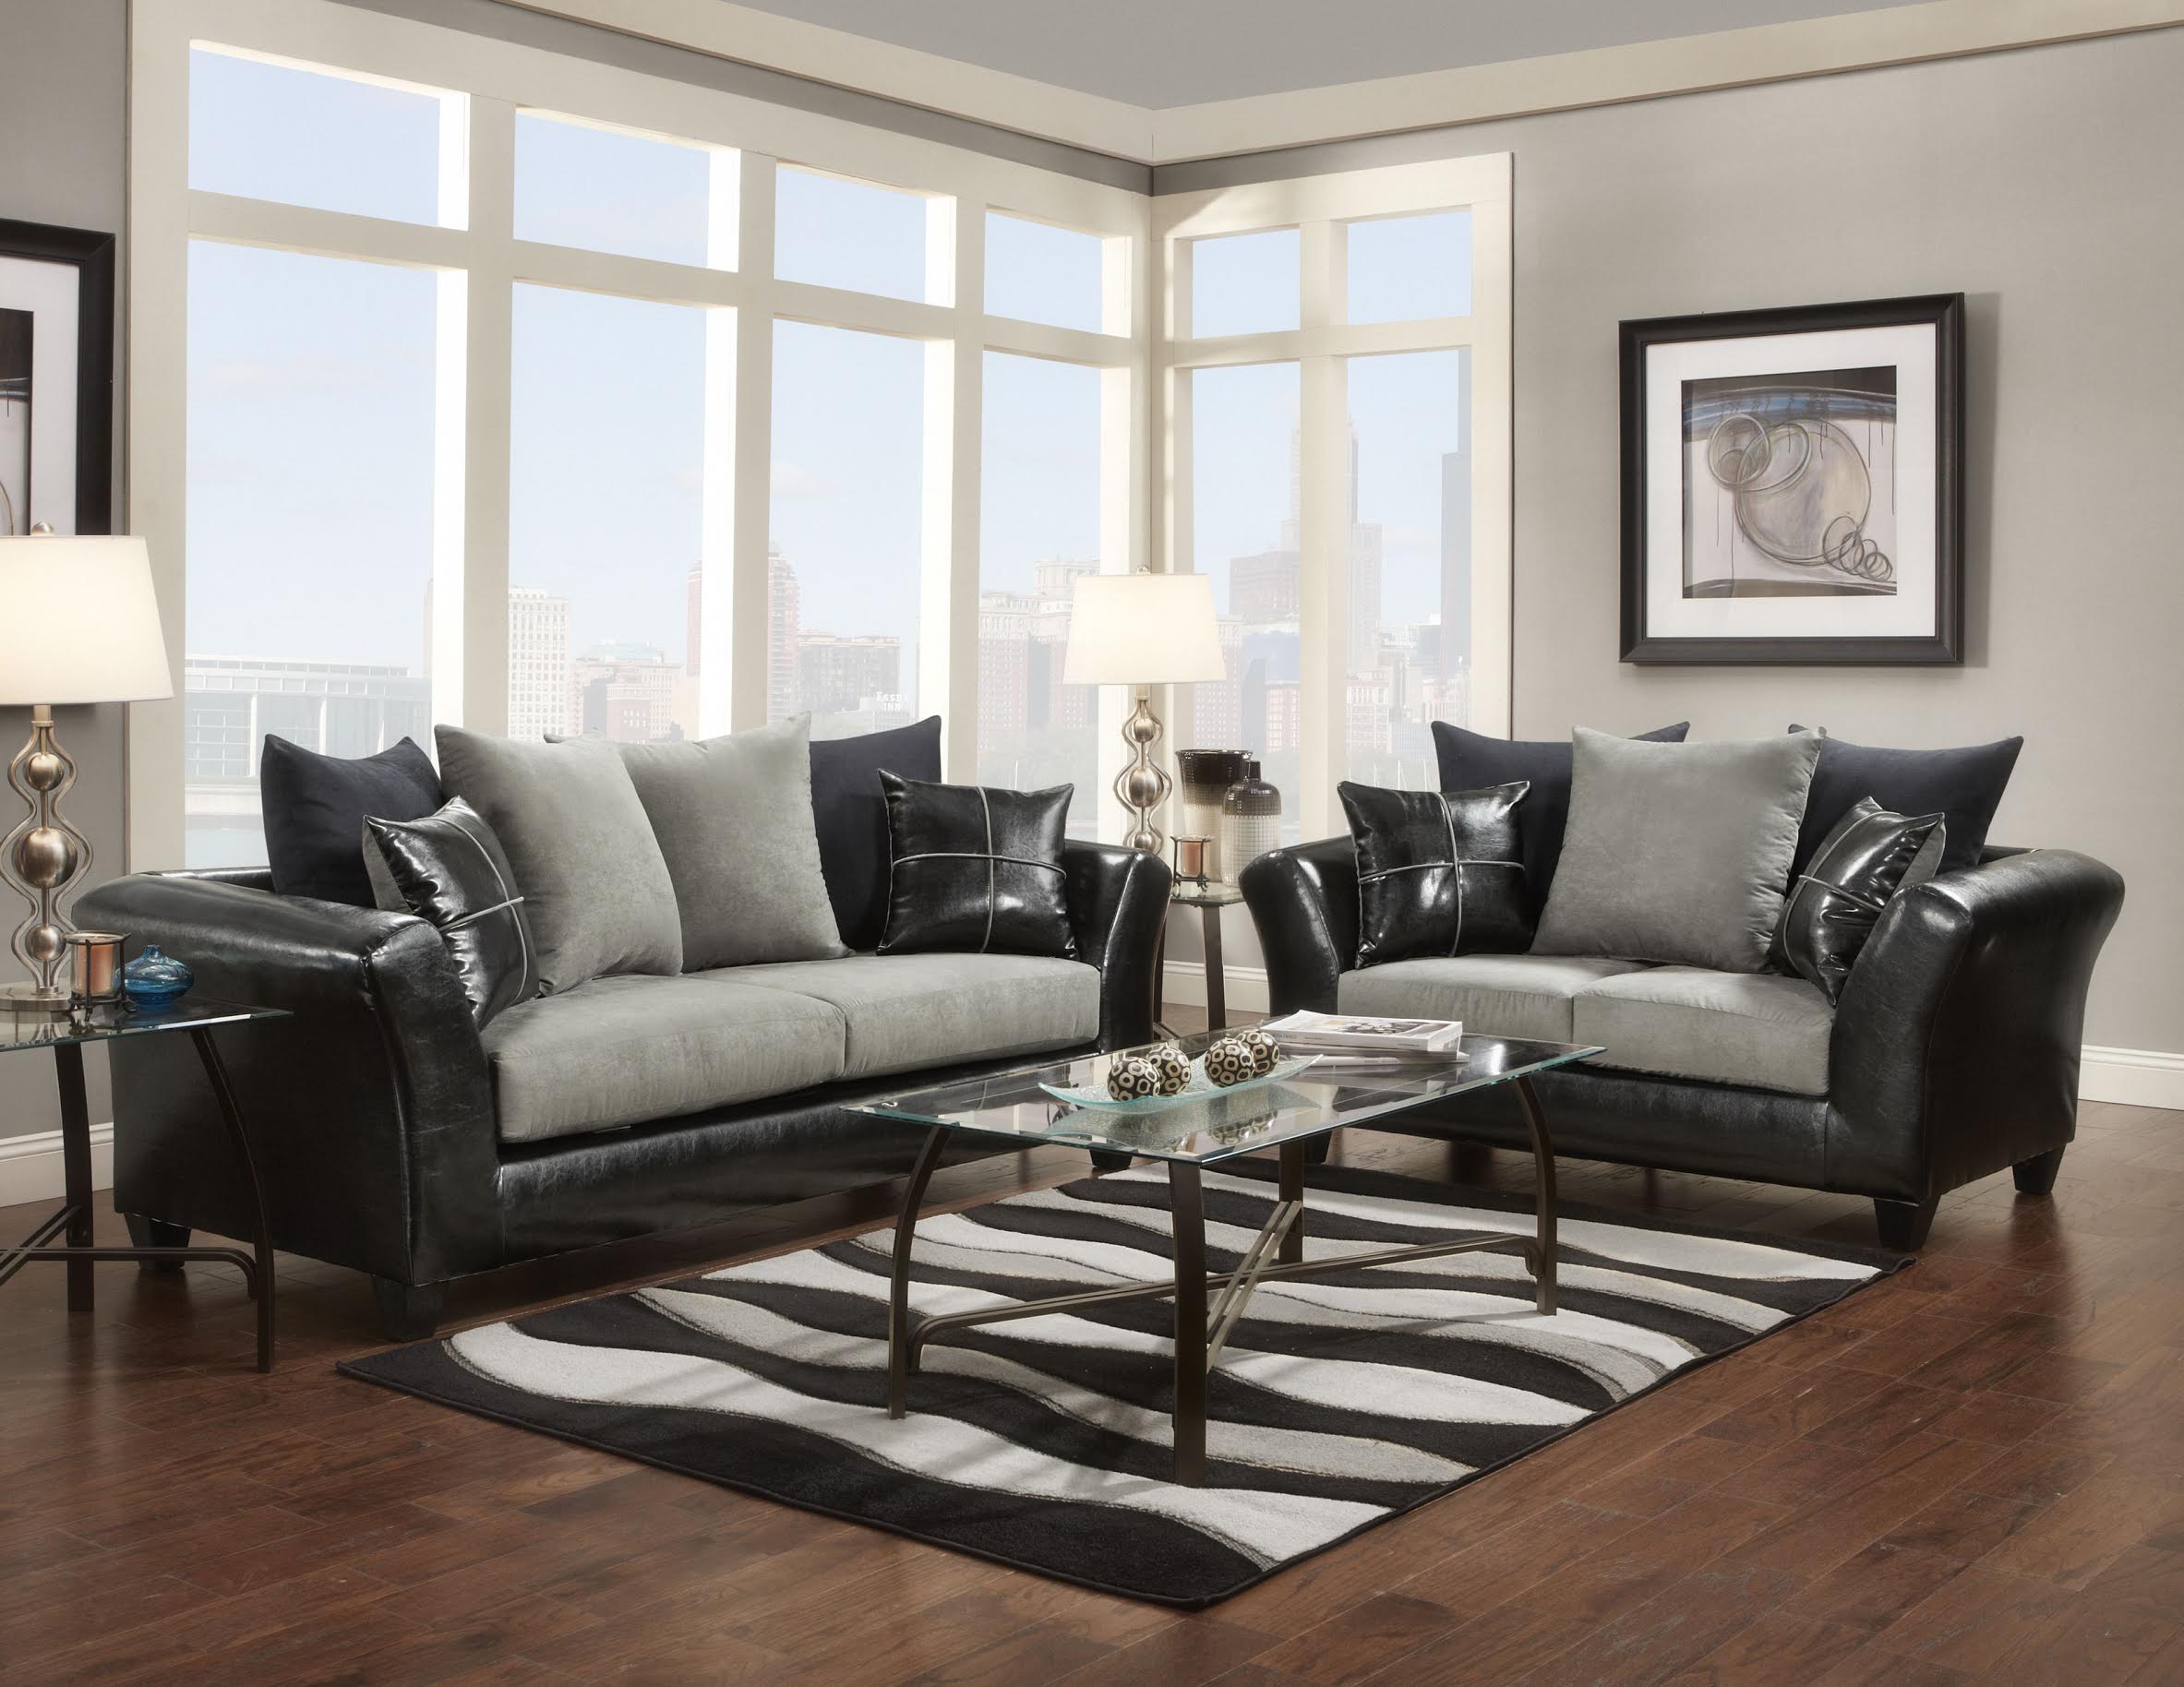 Living Room Furniture Deals Online In Nj